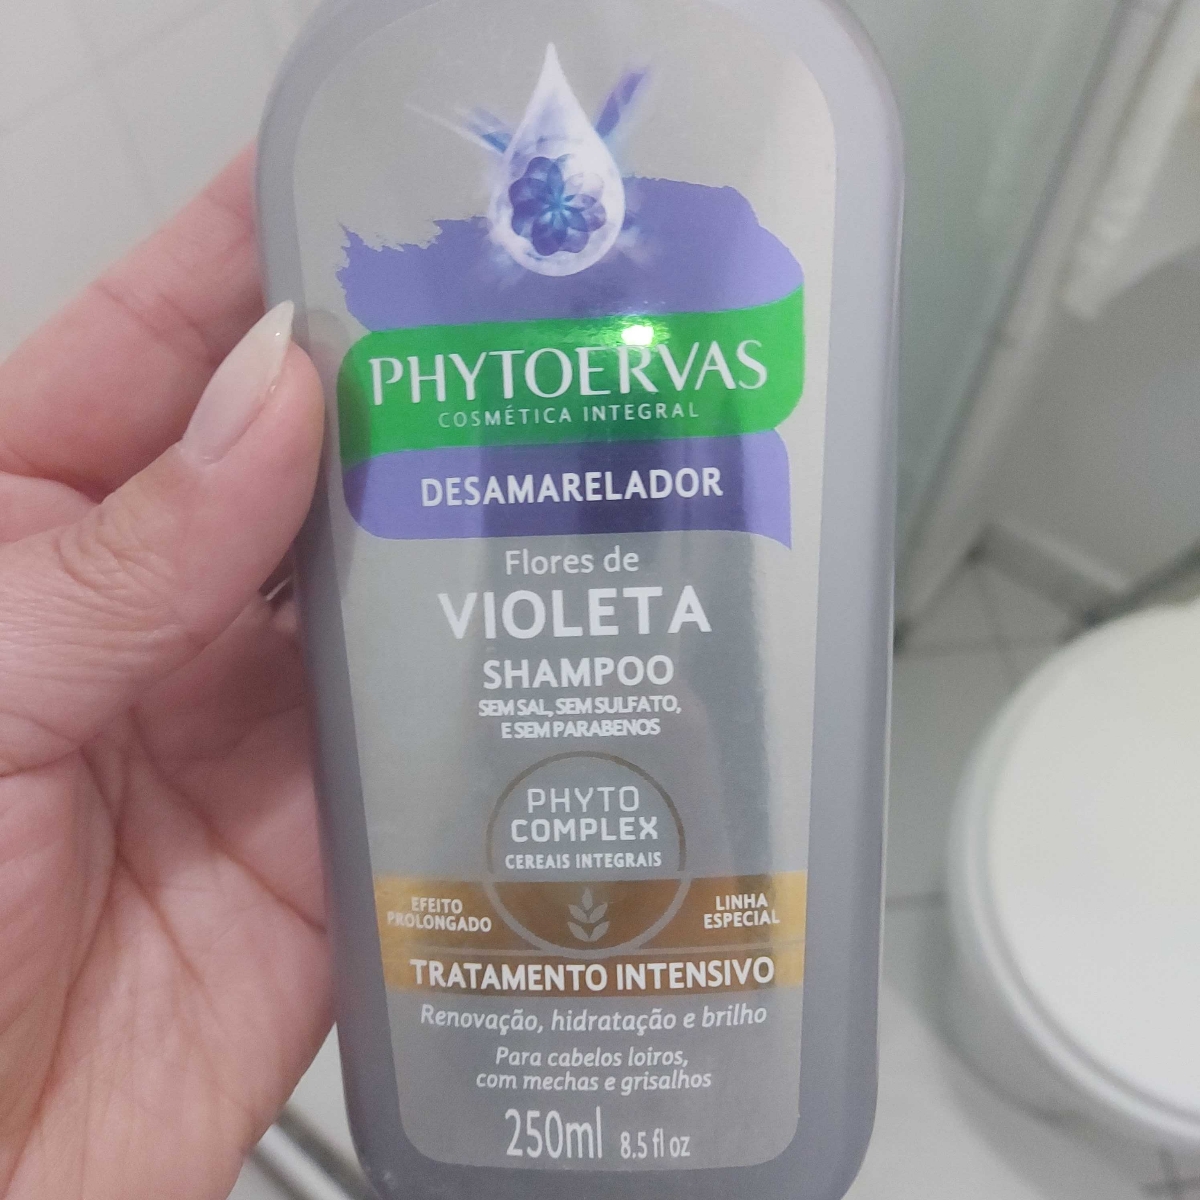 Phytoervas Shampoo Desamarelador Review